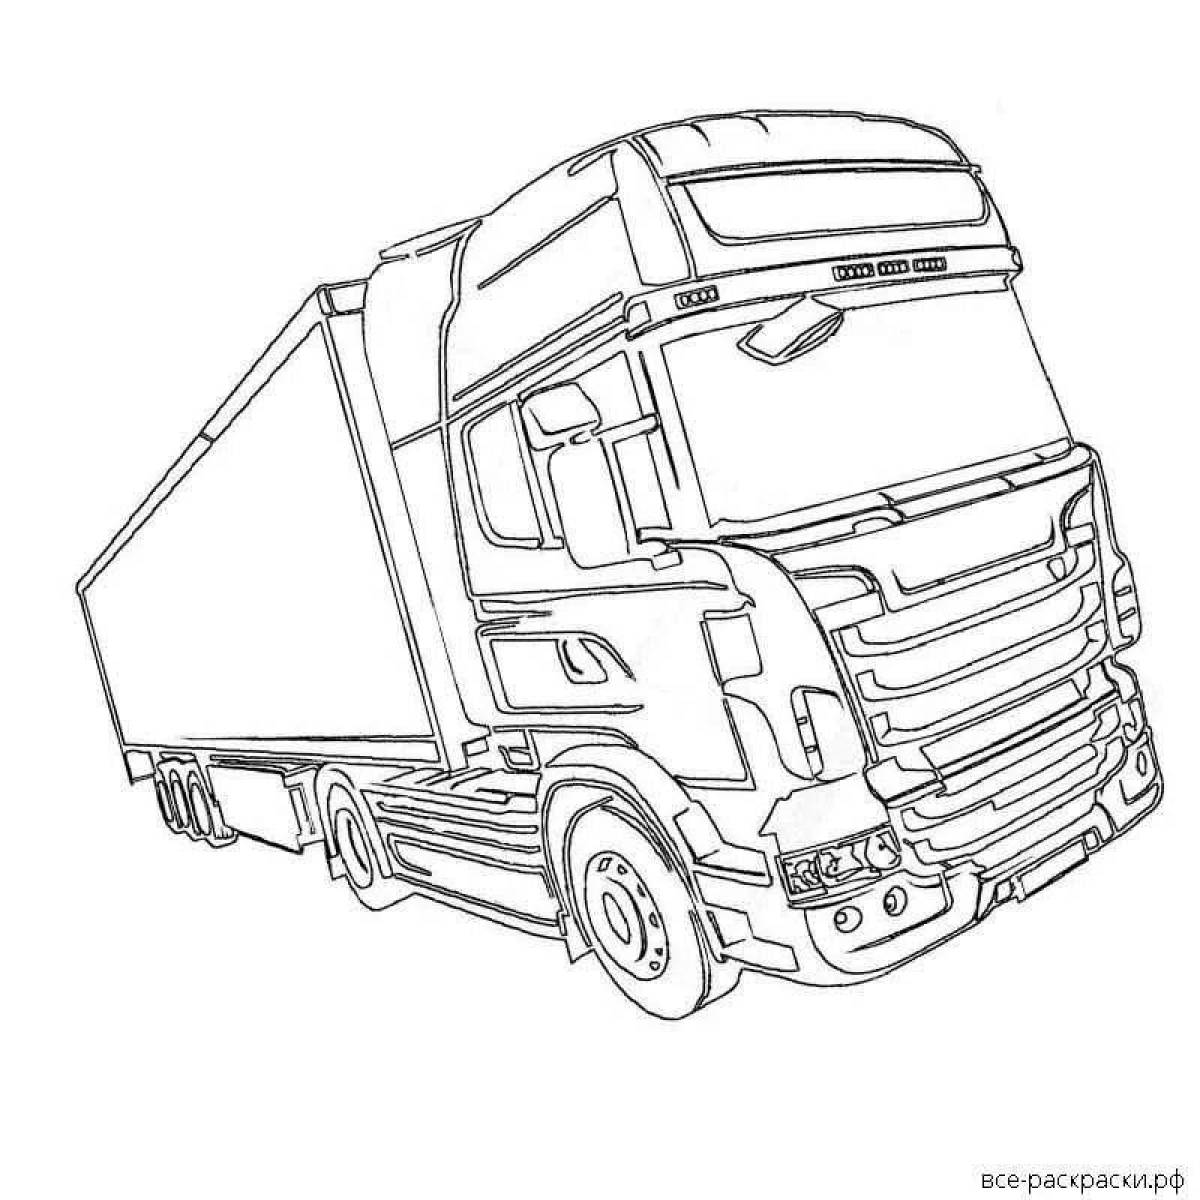 Scania представила в России прощальную спецверсию тягача прошлого поколения